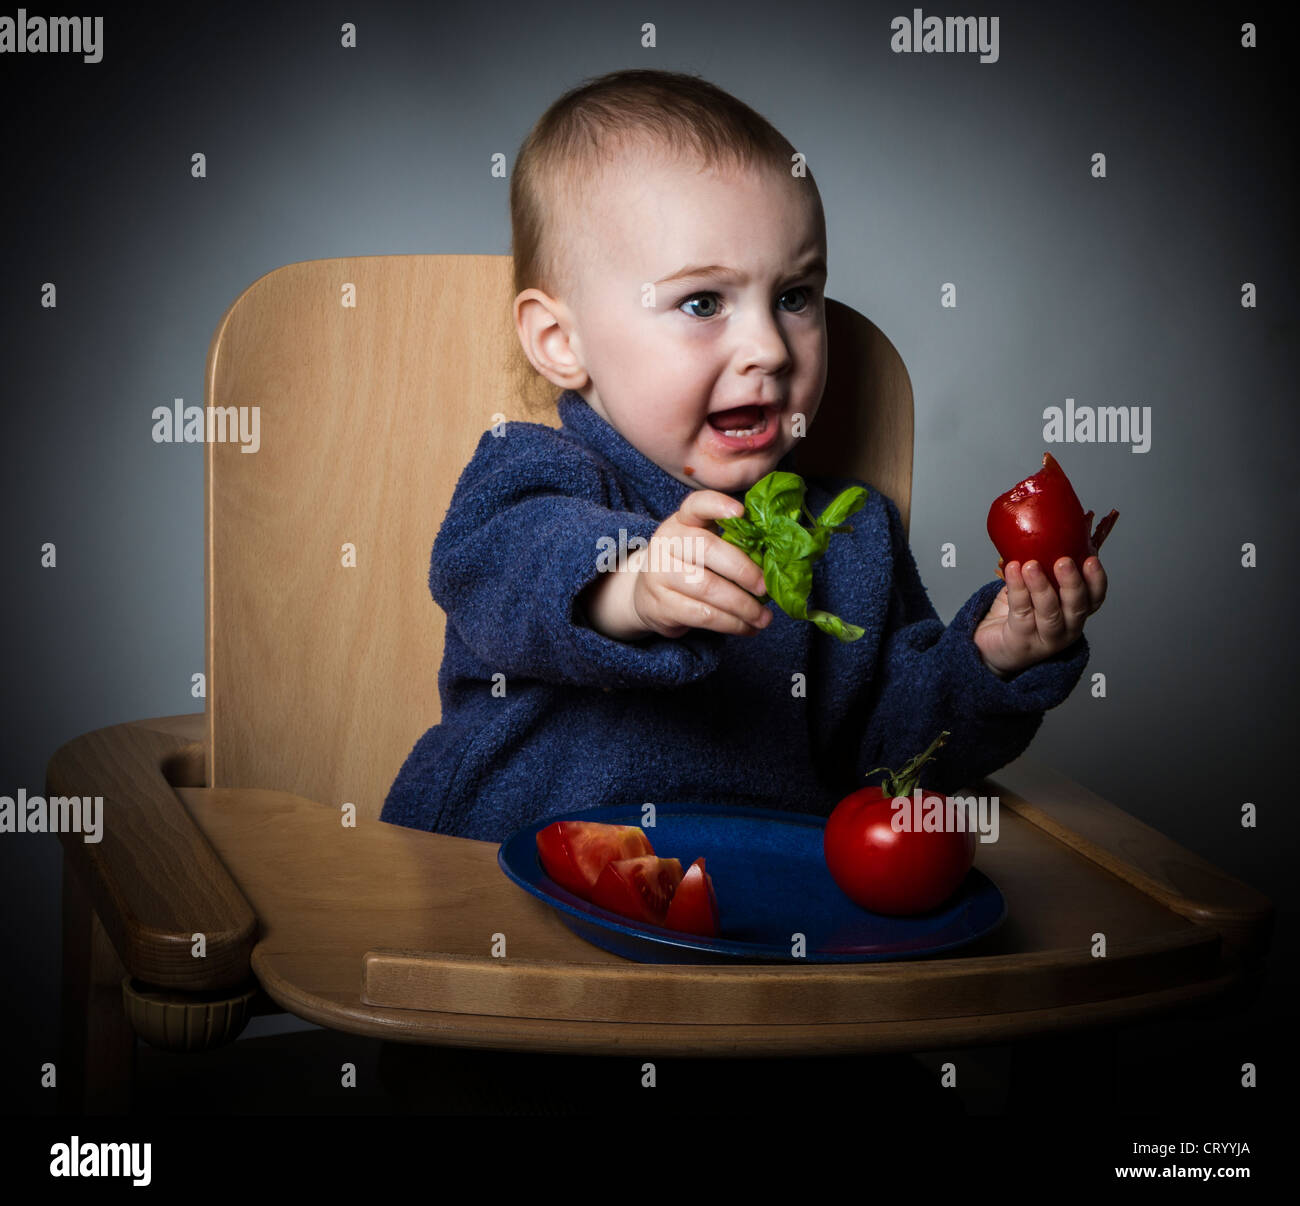 Jeune enfant de manger les tomates dans une chaise haute. Fond sombre Banque D'Images